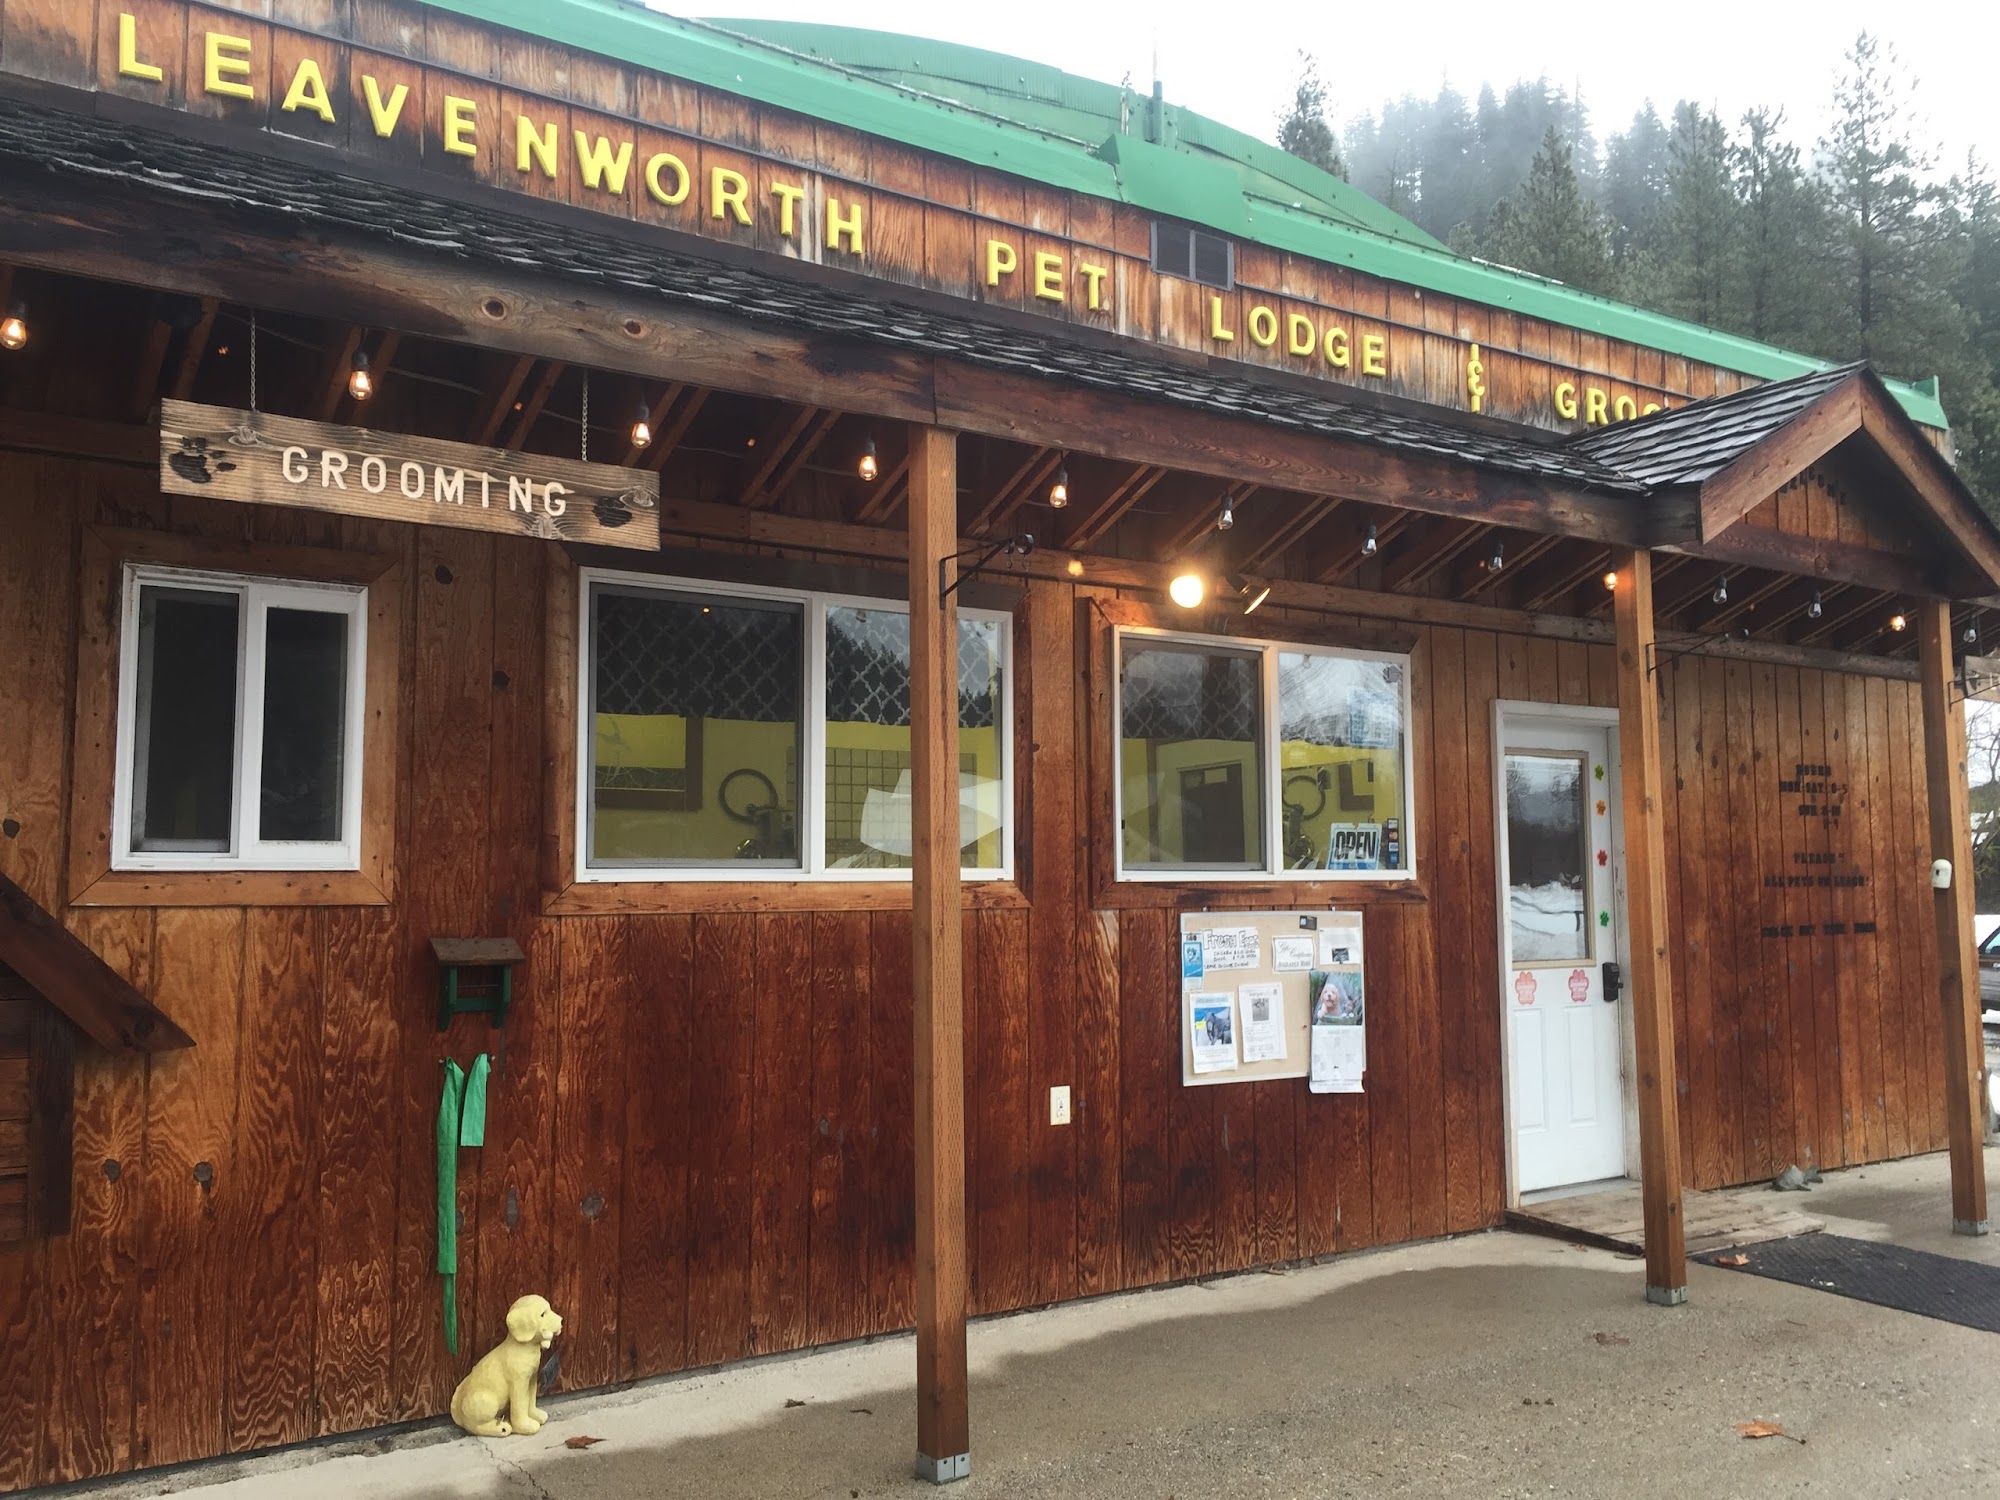 Leavenworth Pet Lodge 67 Pet Lodge Ln, Leavenworth Washington 98826